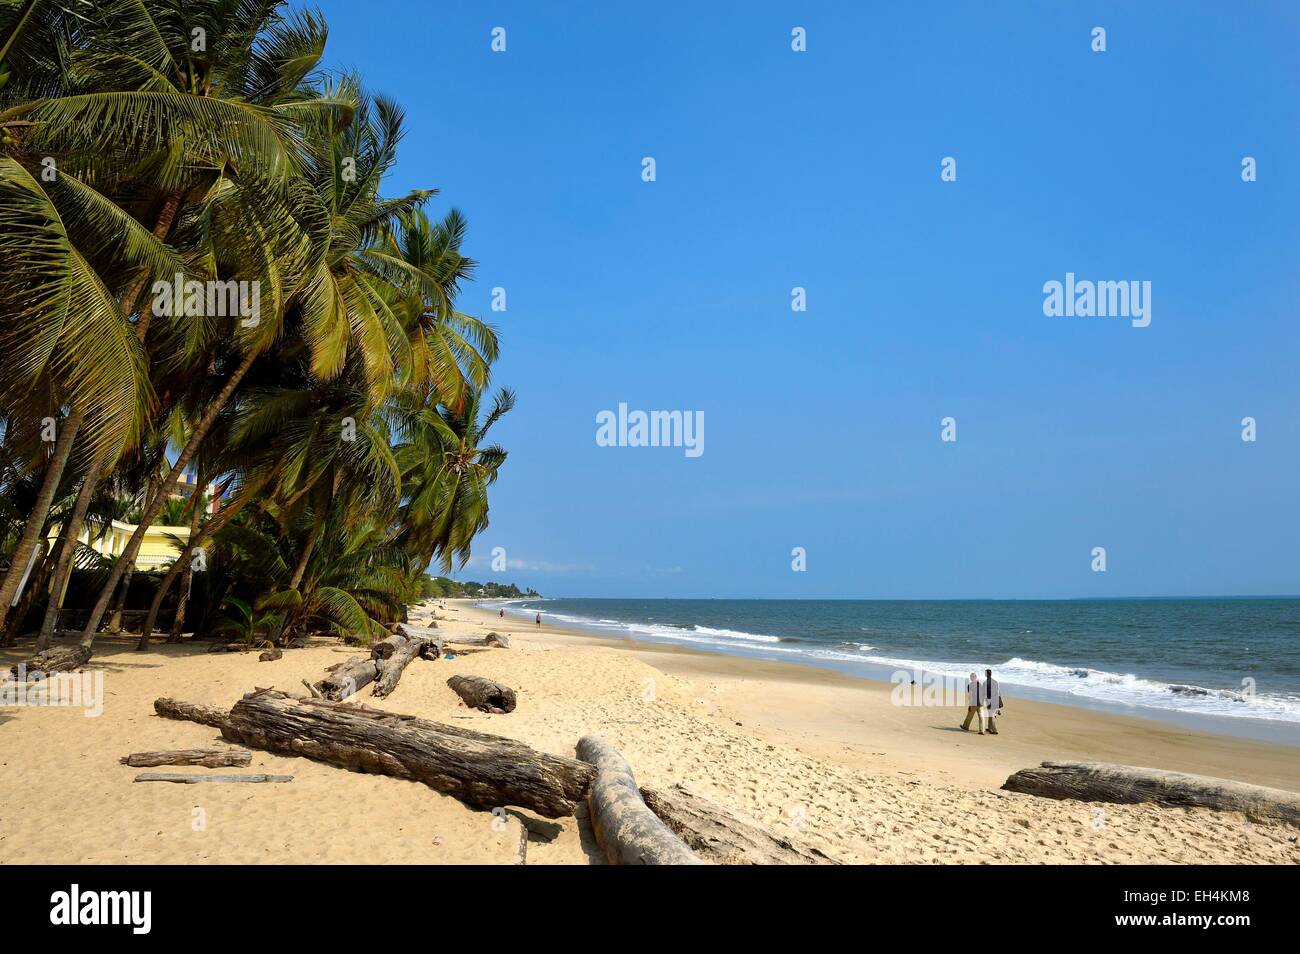 Le GABON, Libreville, plage bordant l'estuaire du Gabon Banque D'Images